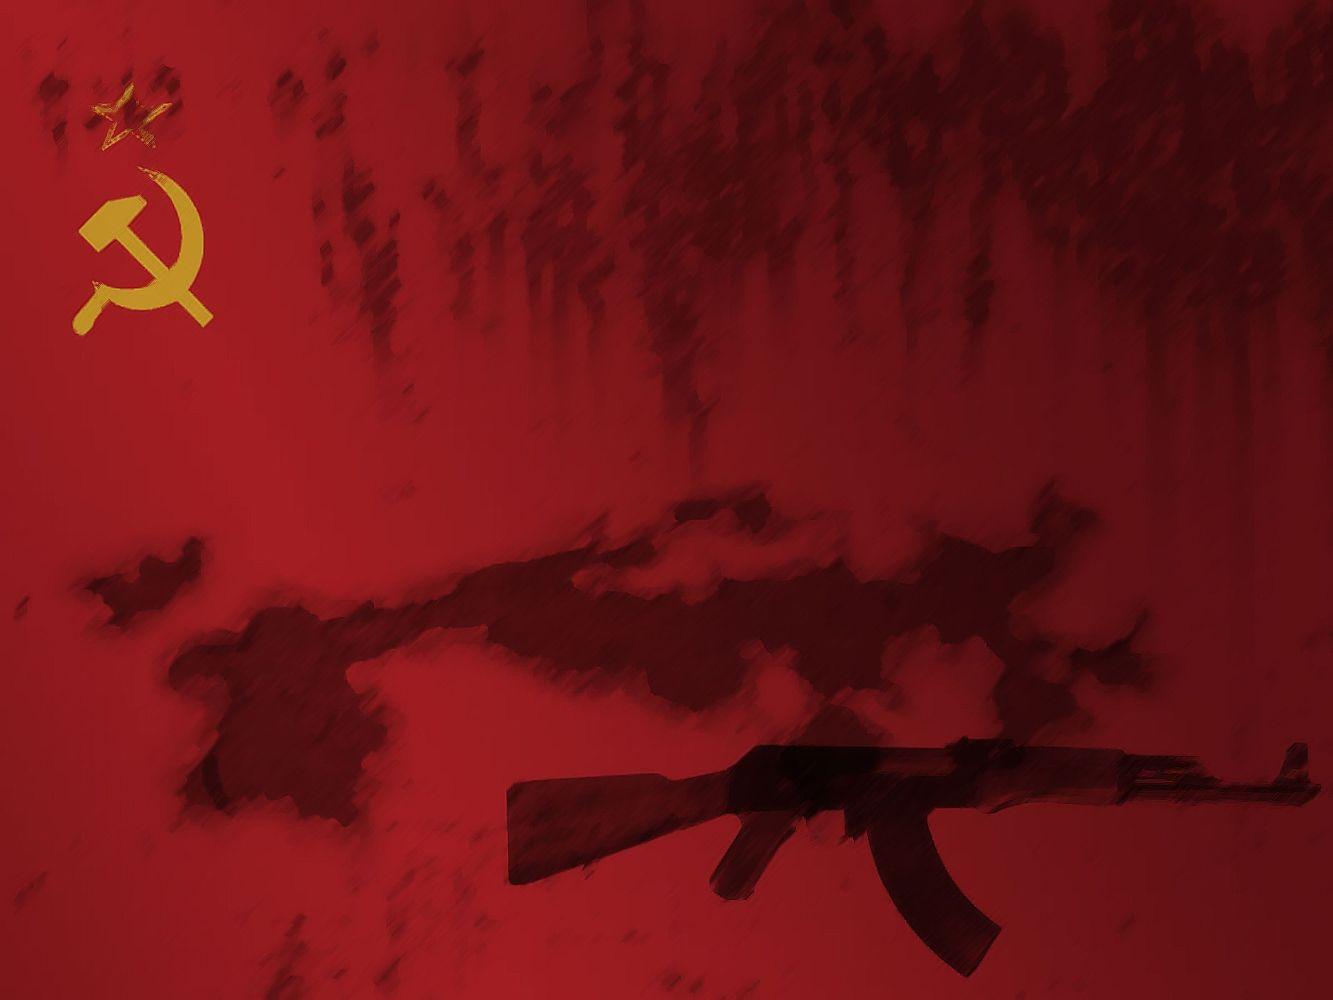 communism soviet russia 1333x1000 wallpaper High Quality Wallpaper